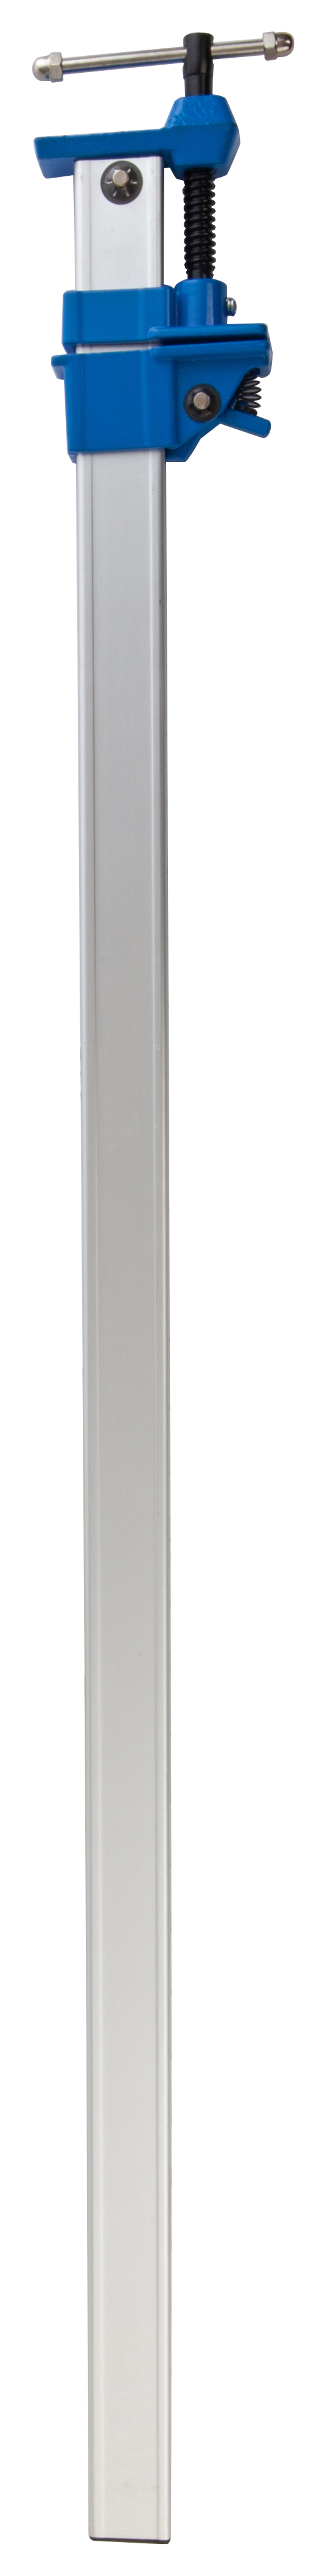 Wickes Aluminium Sash Clamp - 35in / 900mm